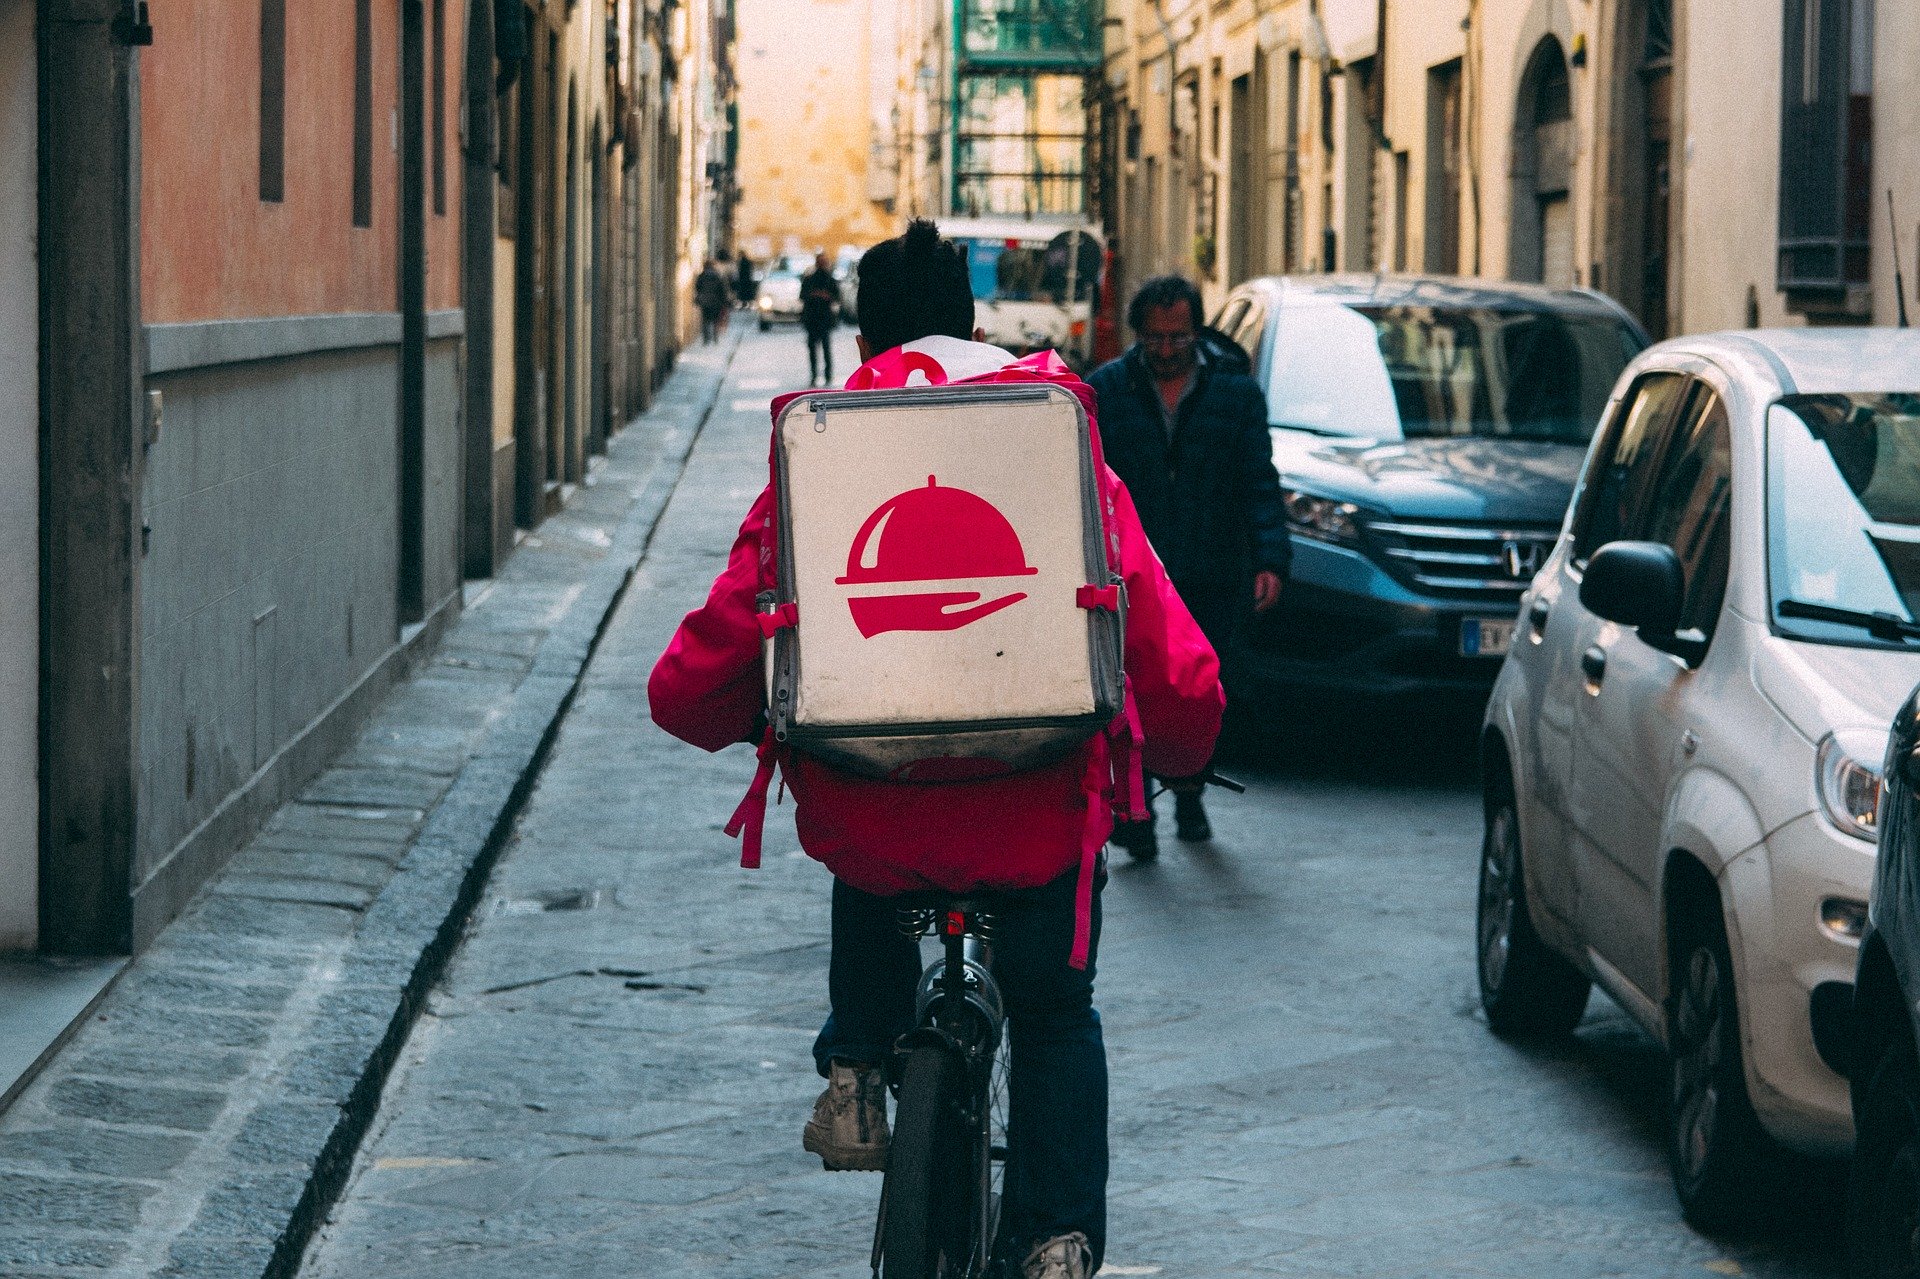 Man delivering food via a bike.